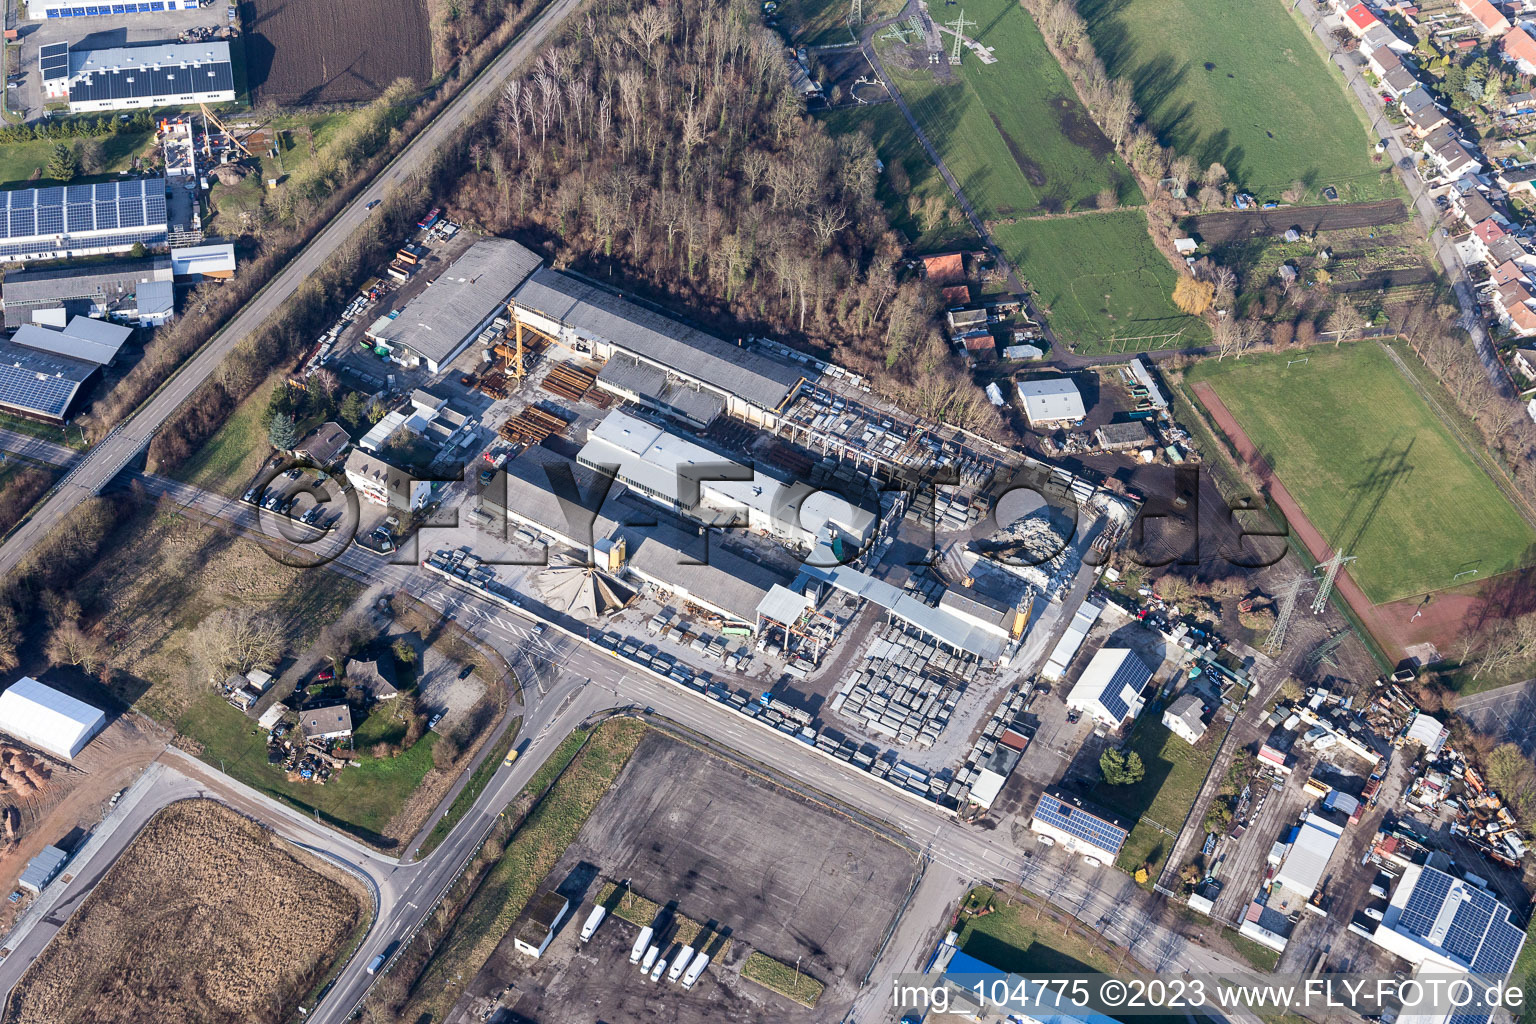 Vue aérienne de Zone industrielle à le quartier Huttenheim in Philippsburg dans le département Bade-Wurtemberg, Allemagne